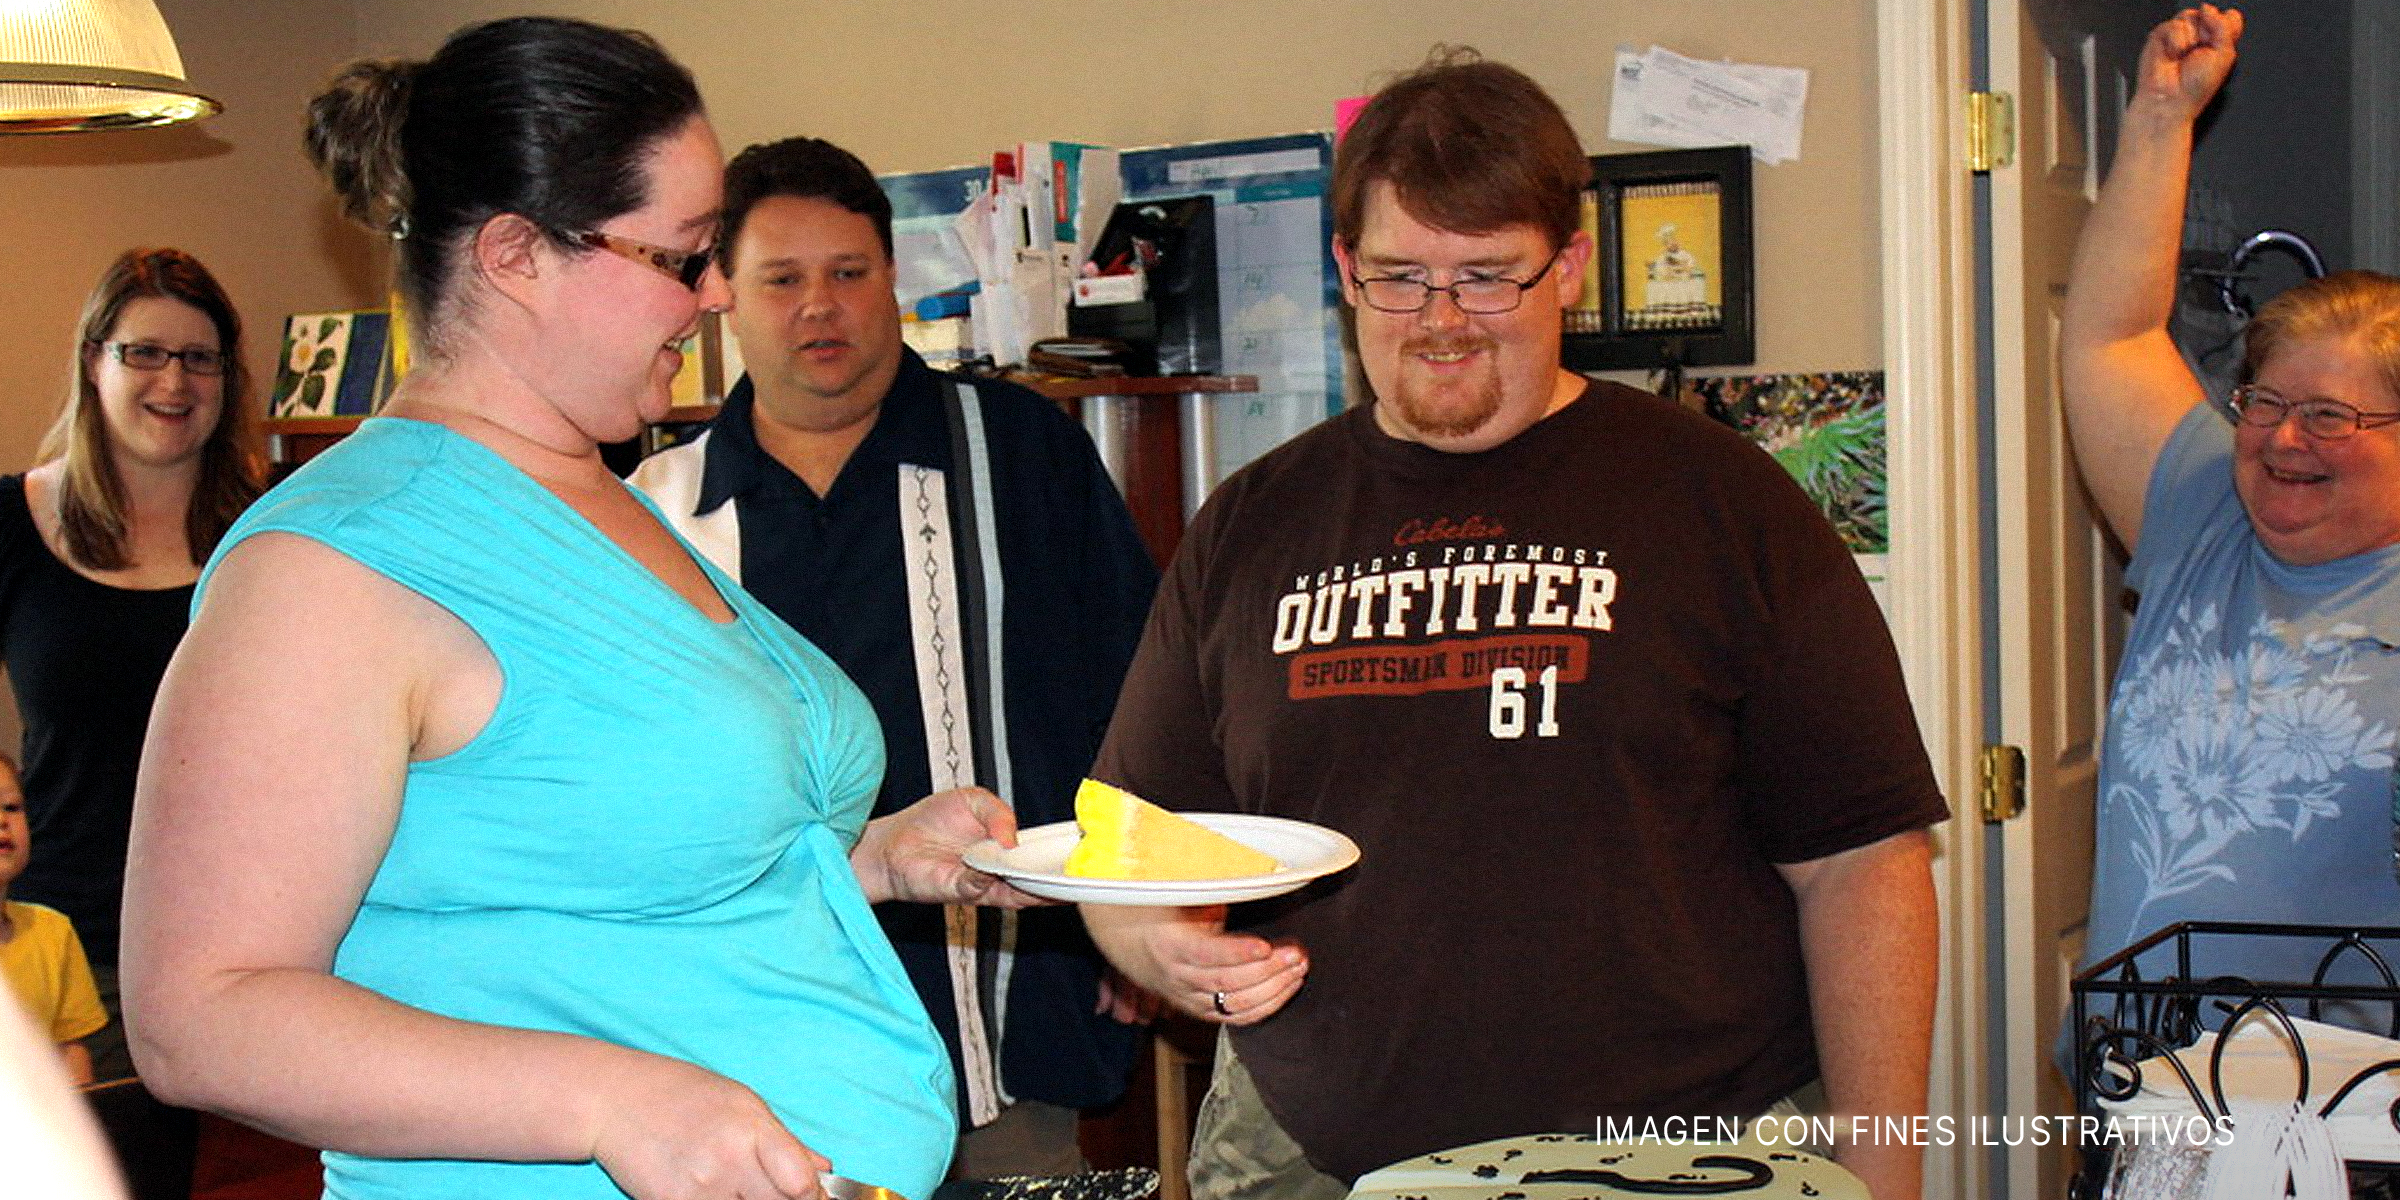 Un hombre y una mujer compartiendo pastel | Fuente: Flickr.com